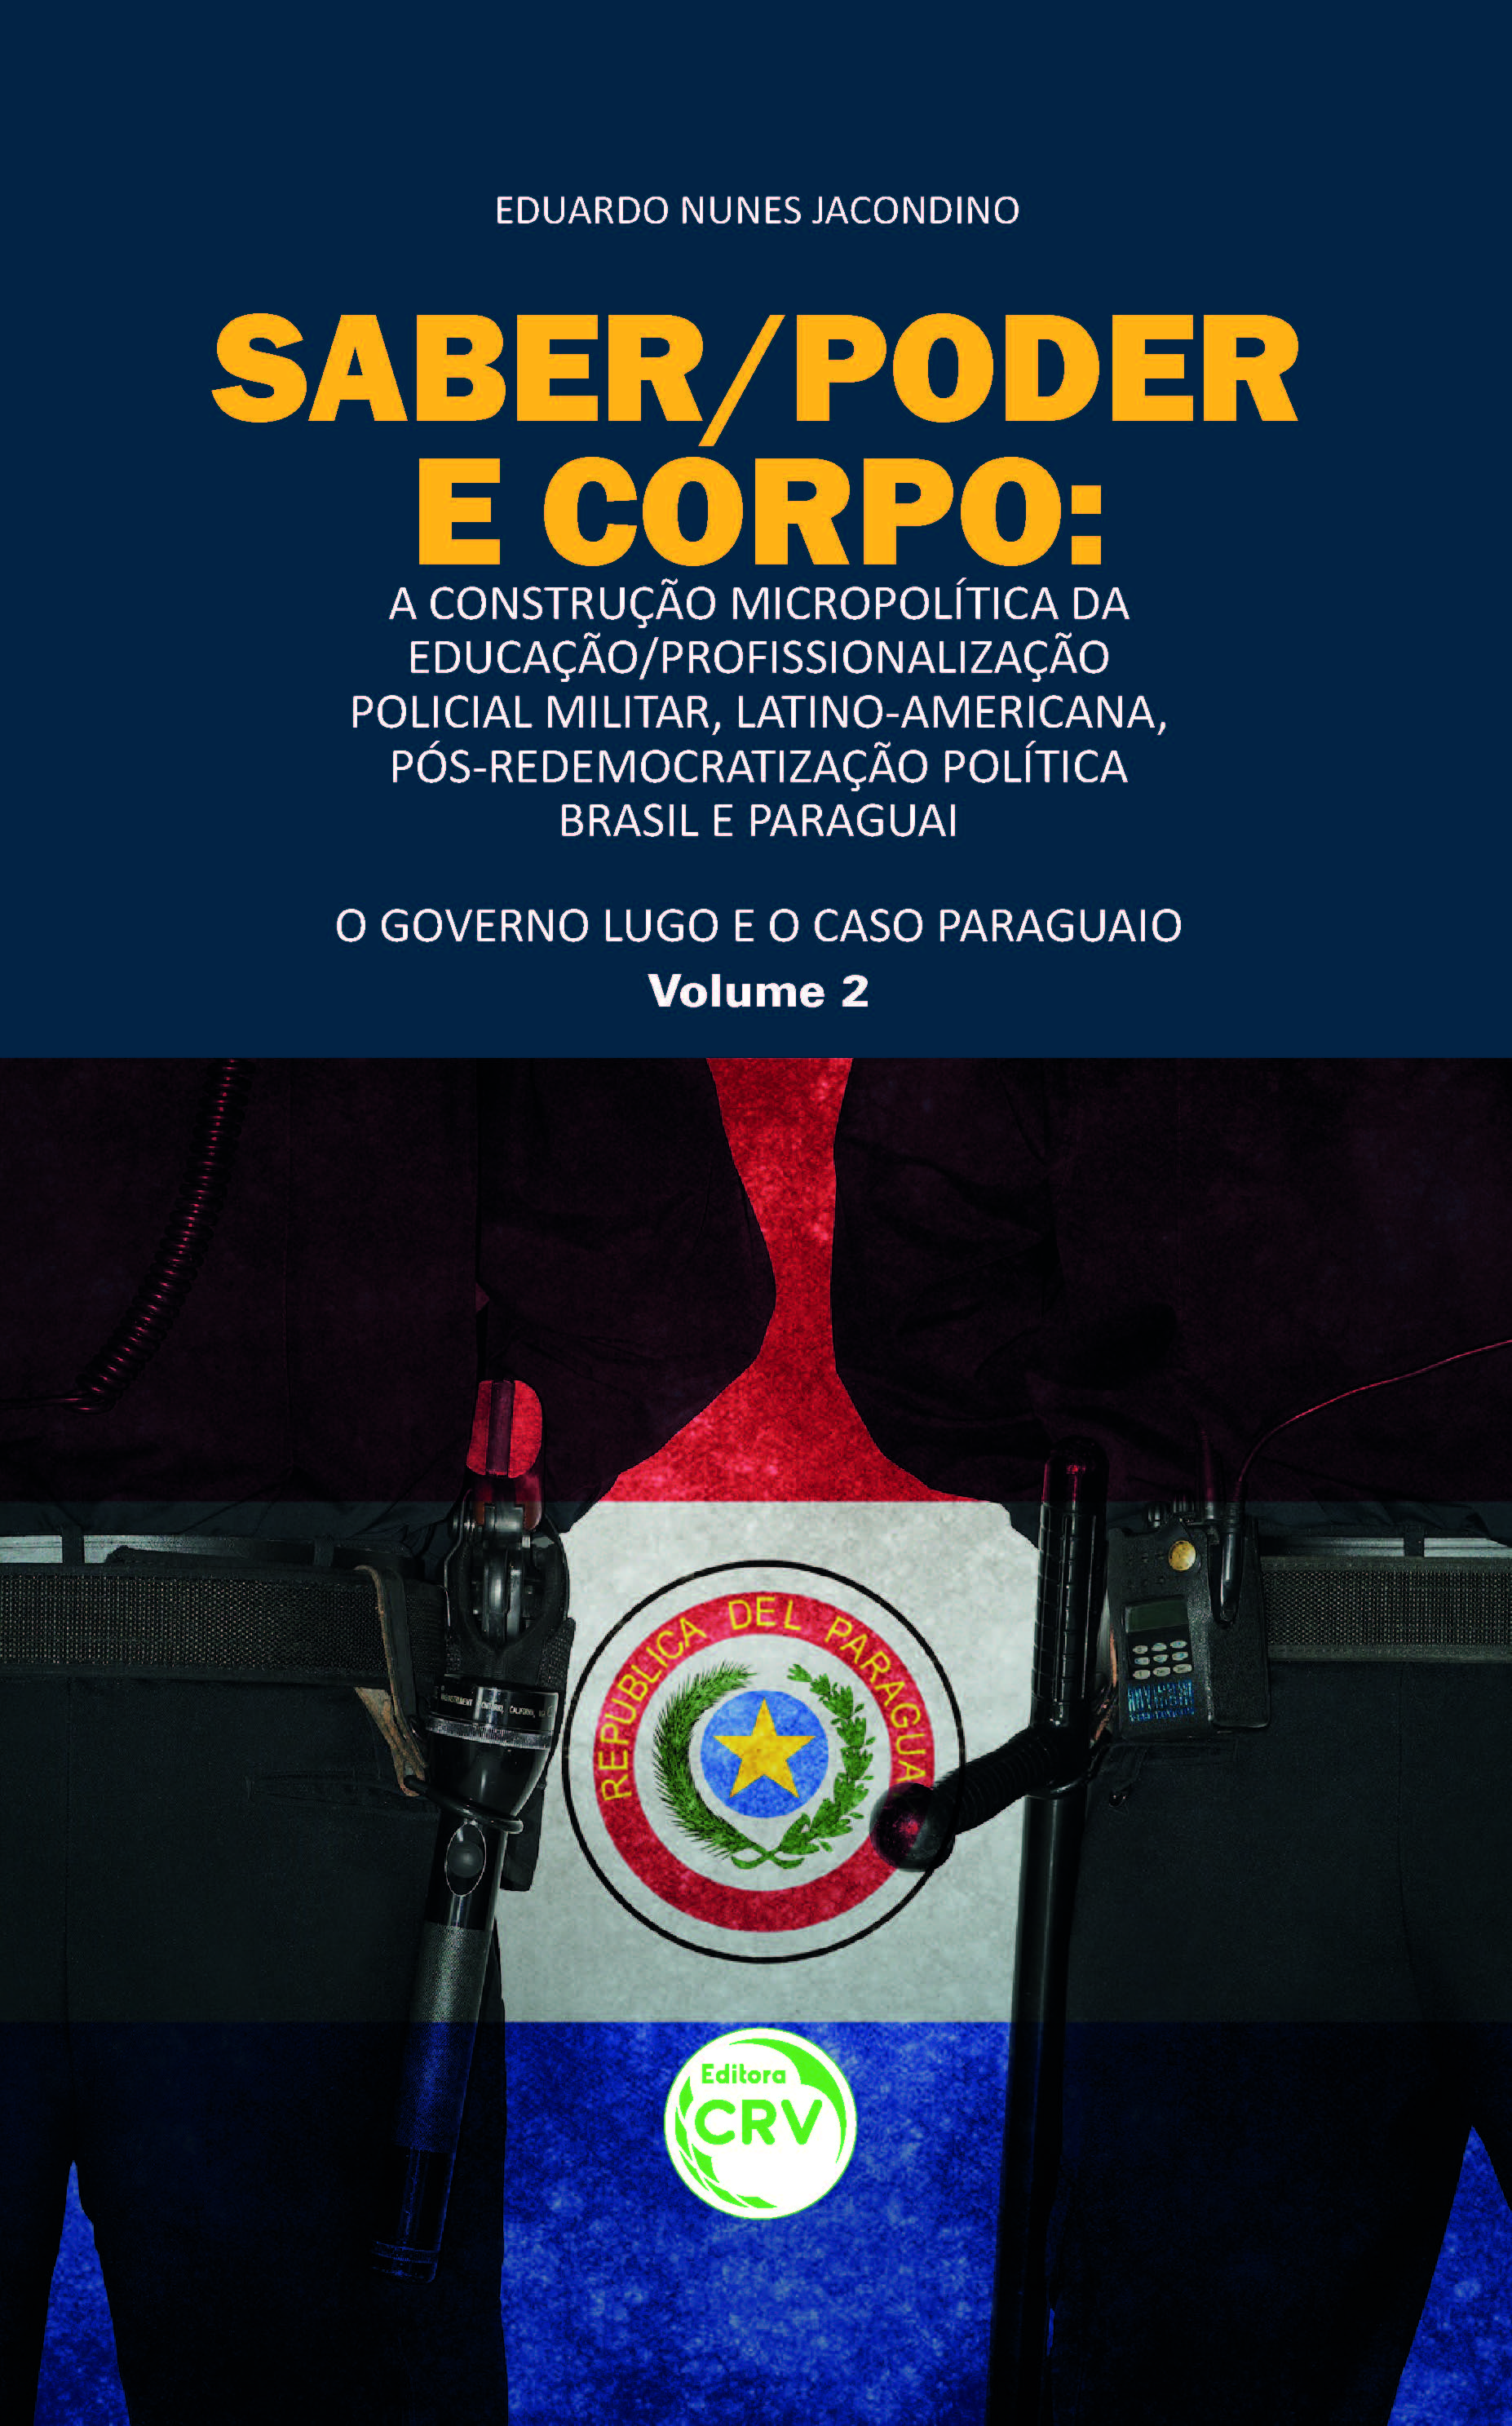 Capa do livro: SABER/PODER E CORPO:<br>A CONSTRUÇÃO MICROPOLÍTICA DA EDUCAÇÃO/PROFISSIONALIZAÇÃO POLICIAL MILITAR, LATINO-AMERICANA, PÓS-REDEMOCRATIZAÇÃO POLÍTICA BRASIL E PARAGUAI<br>O governo lugo e o caso paraguaio<br>Volume 2